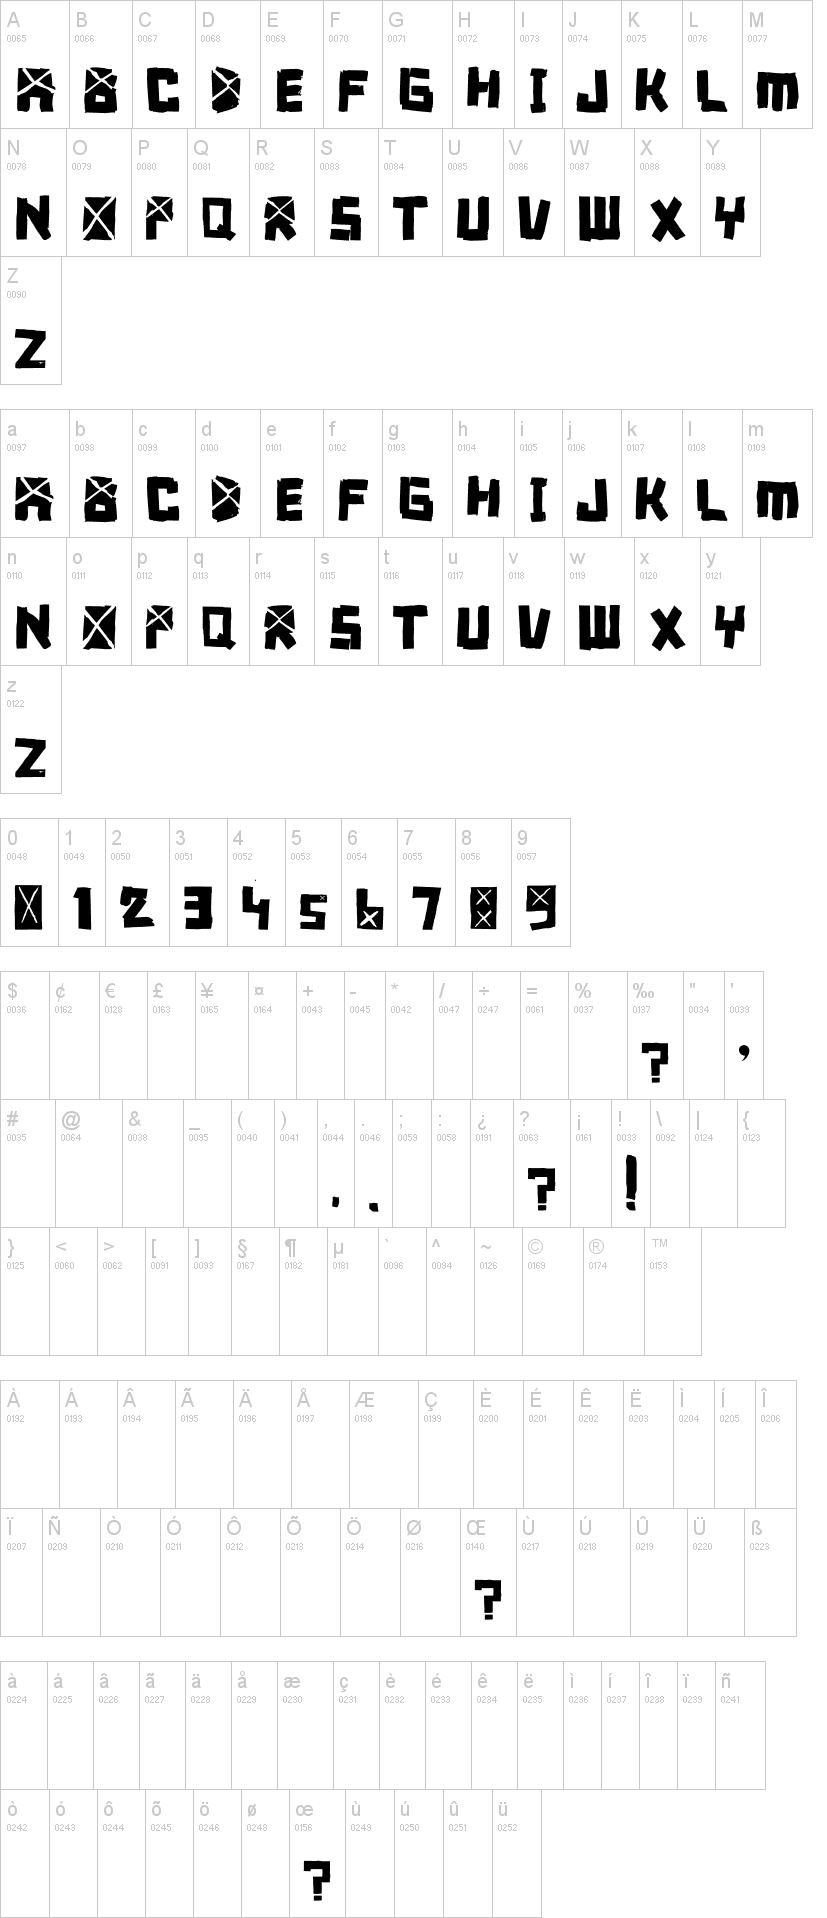 Font Breakdown